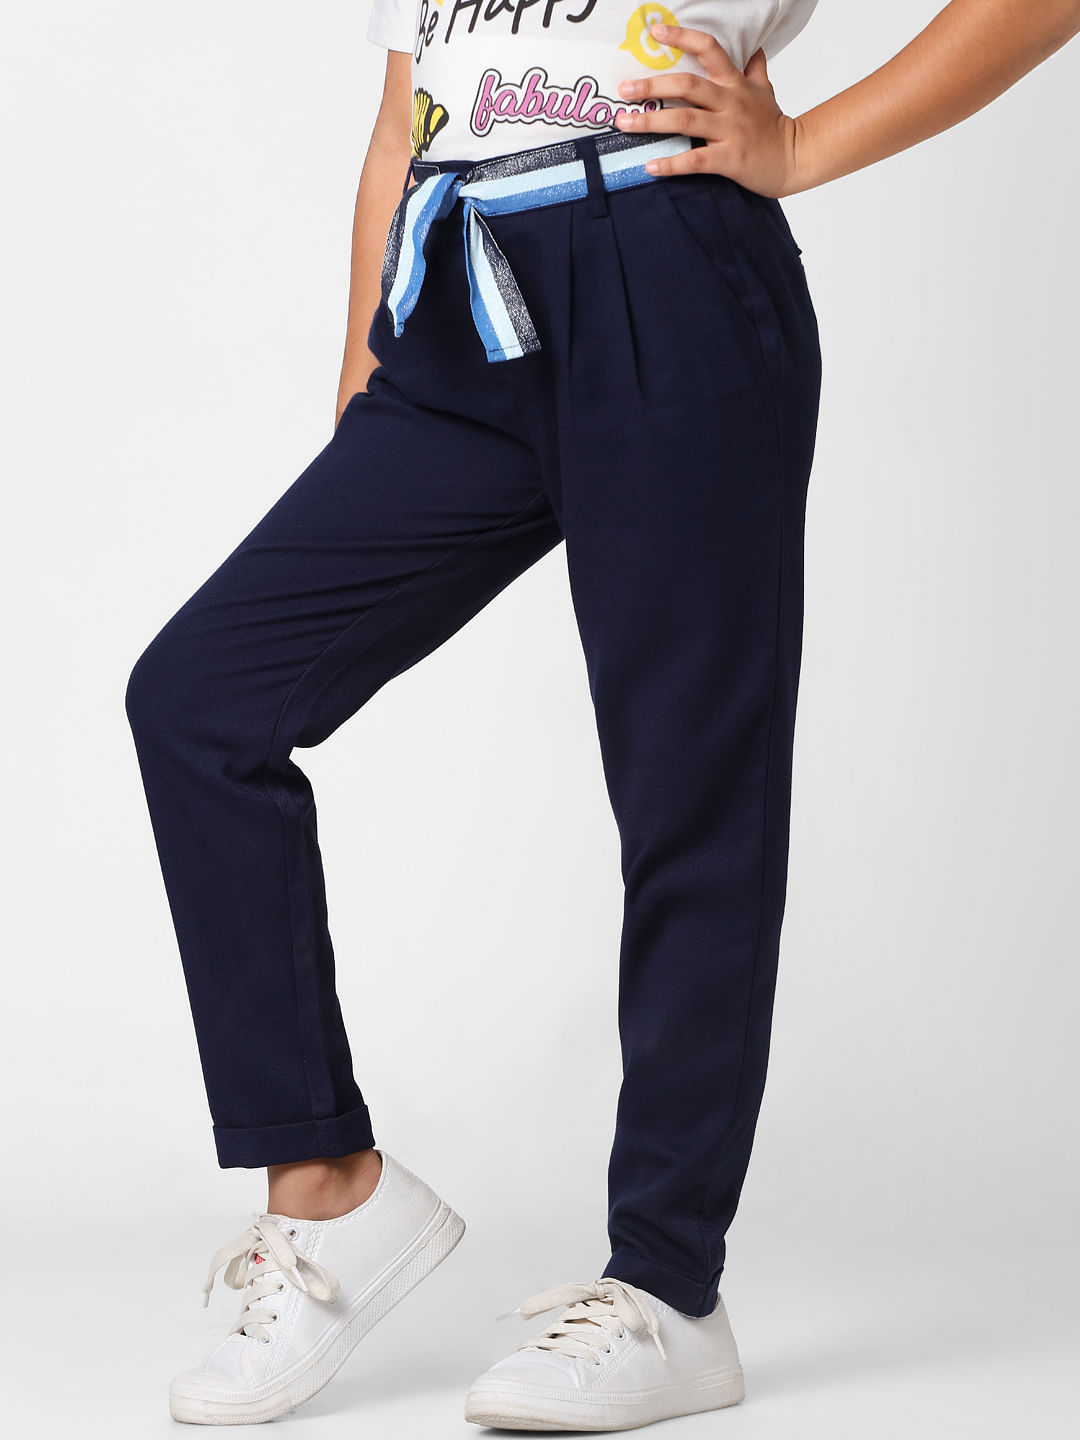 Buy Girls Royal Blue Paper Bag Multi Pocket Pants Online at Sassafras